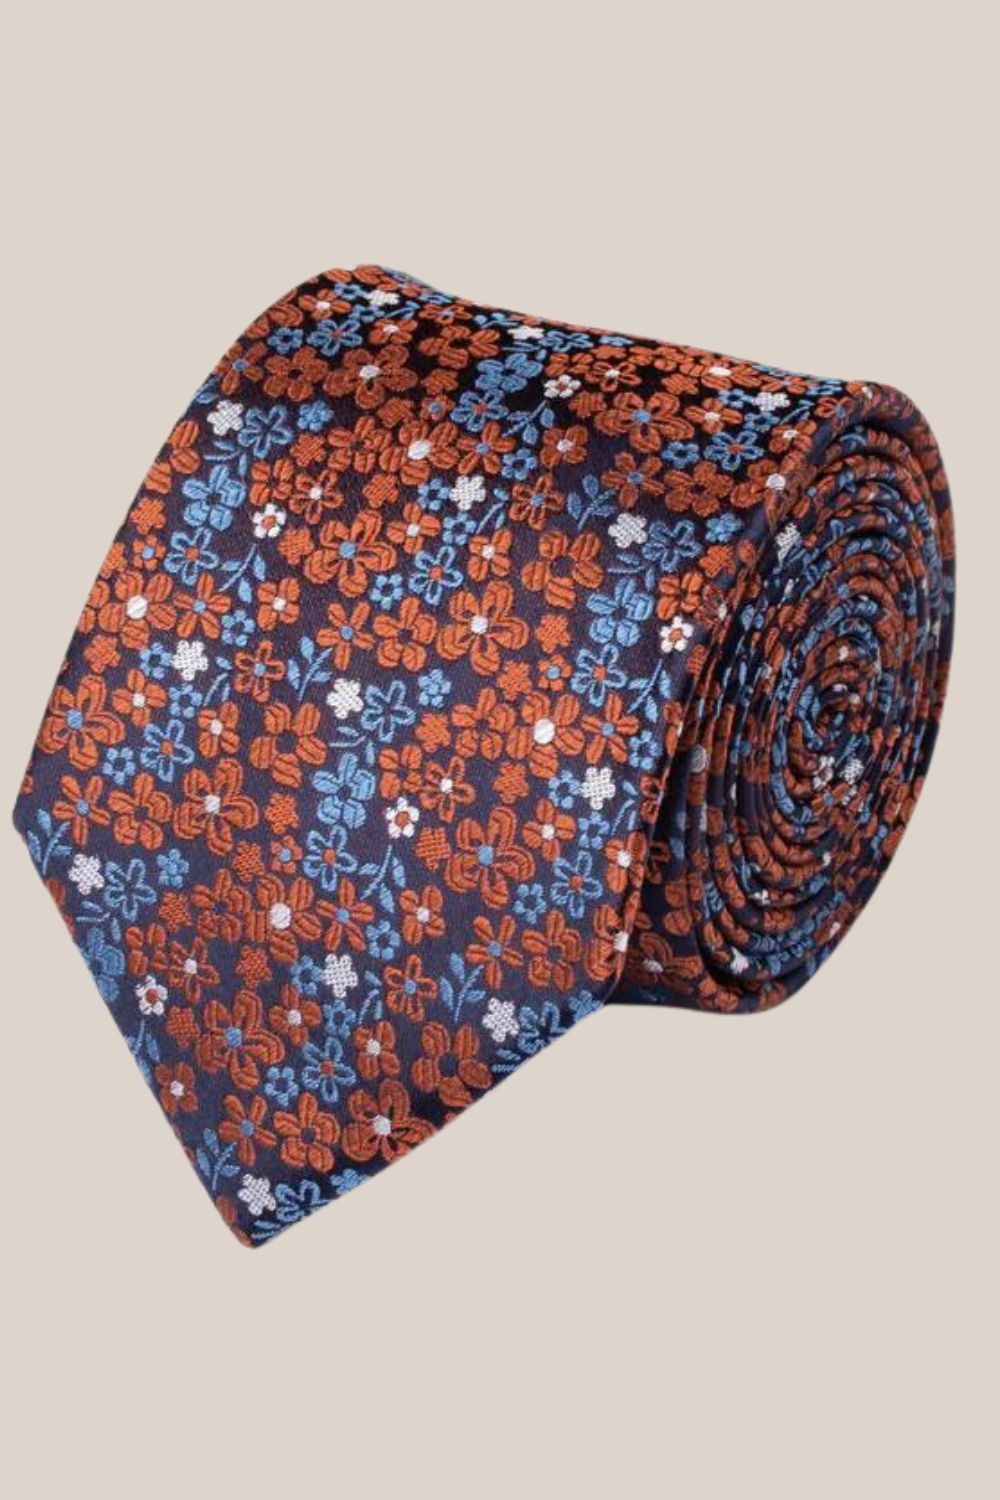 James Harper Floral Tie